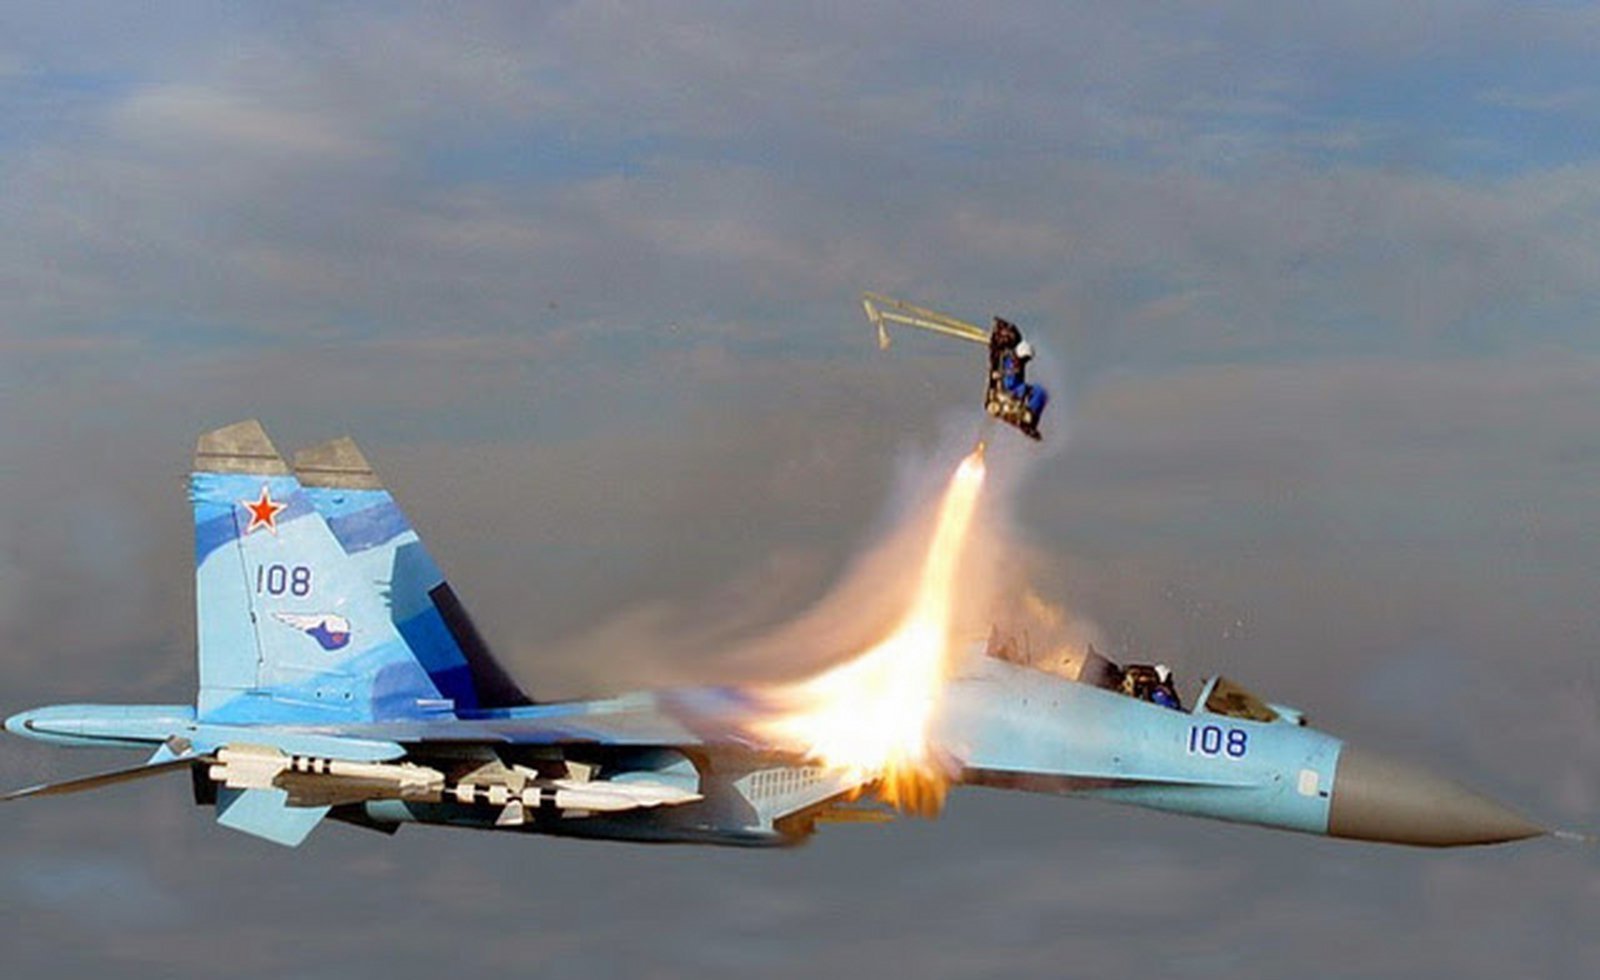 летчик выжил игил иг отвратительные мужики сирия су-24 пилоты в тылу врага